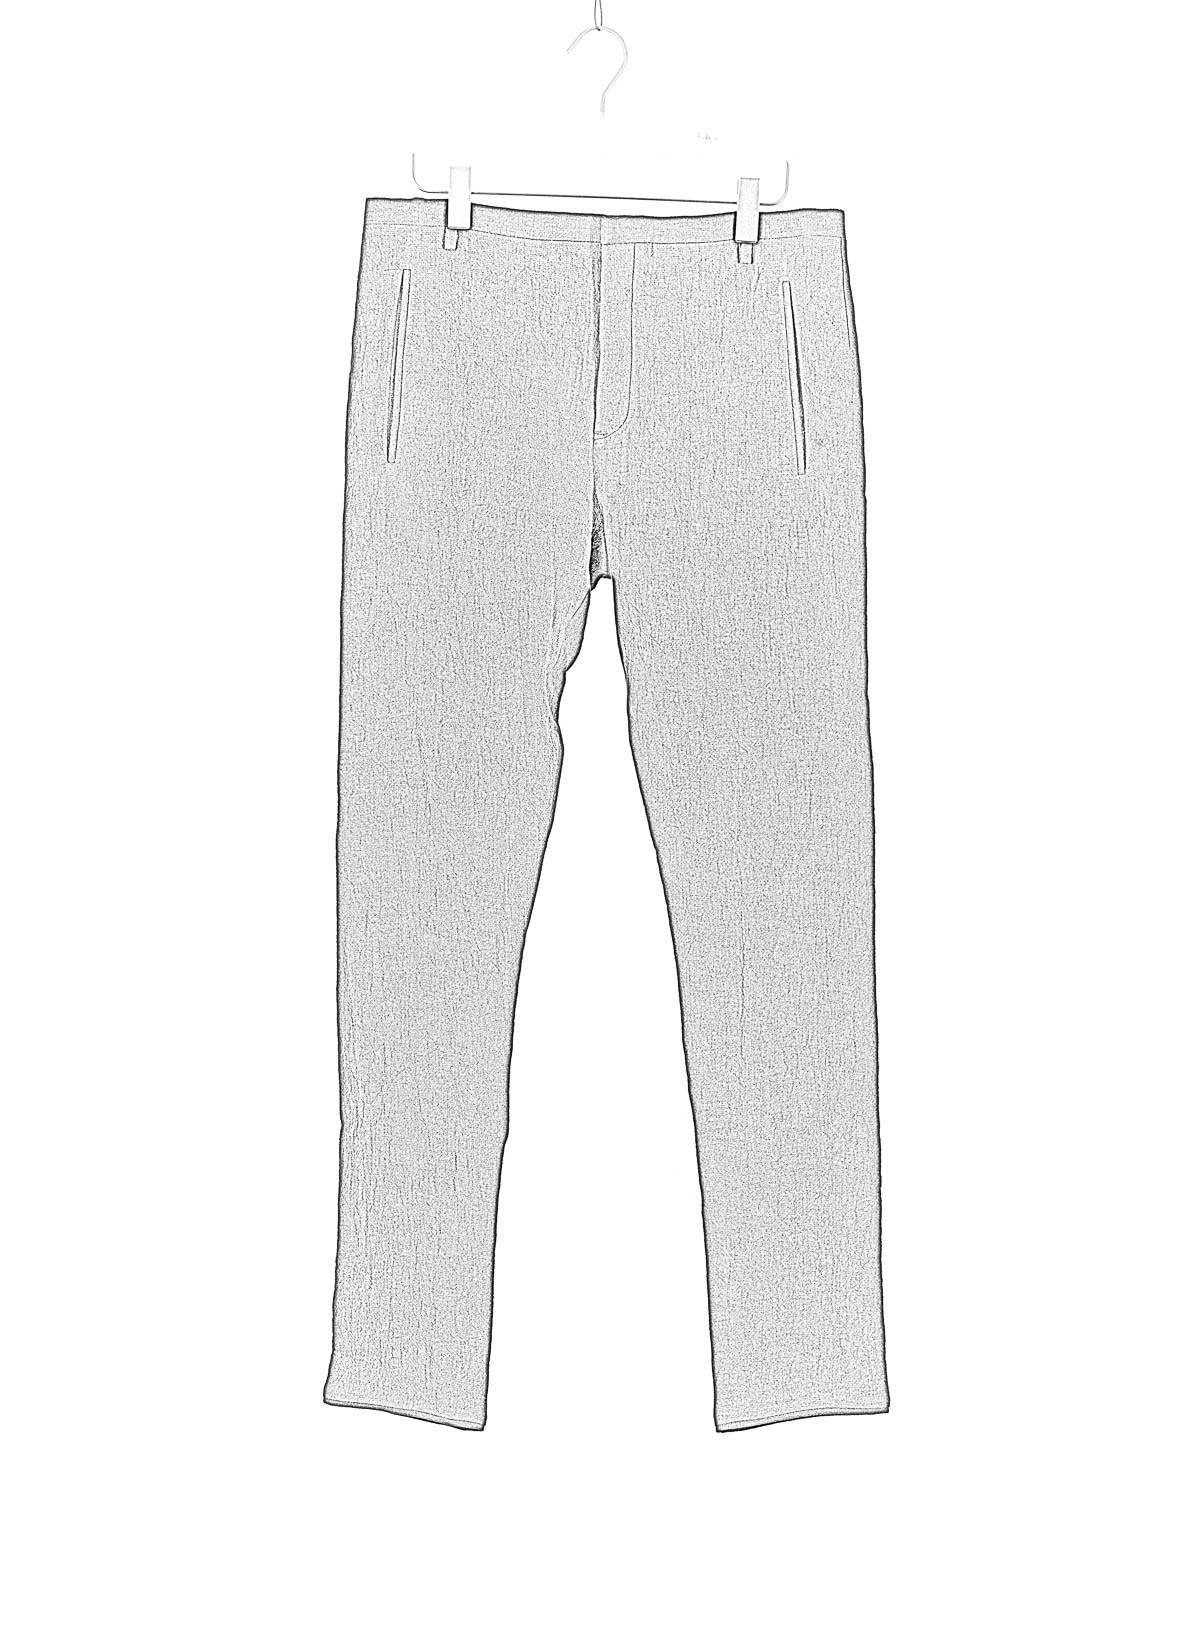 hide-m | Label Under Construction One Cut Pants, black linen